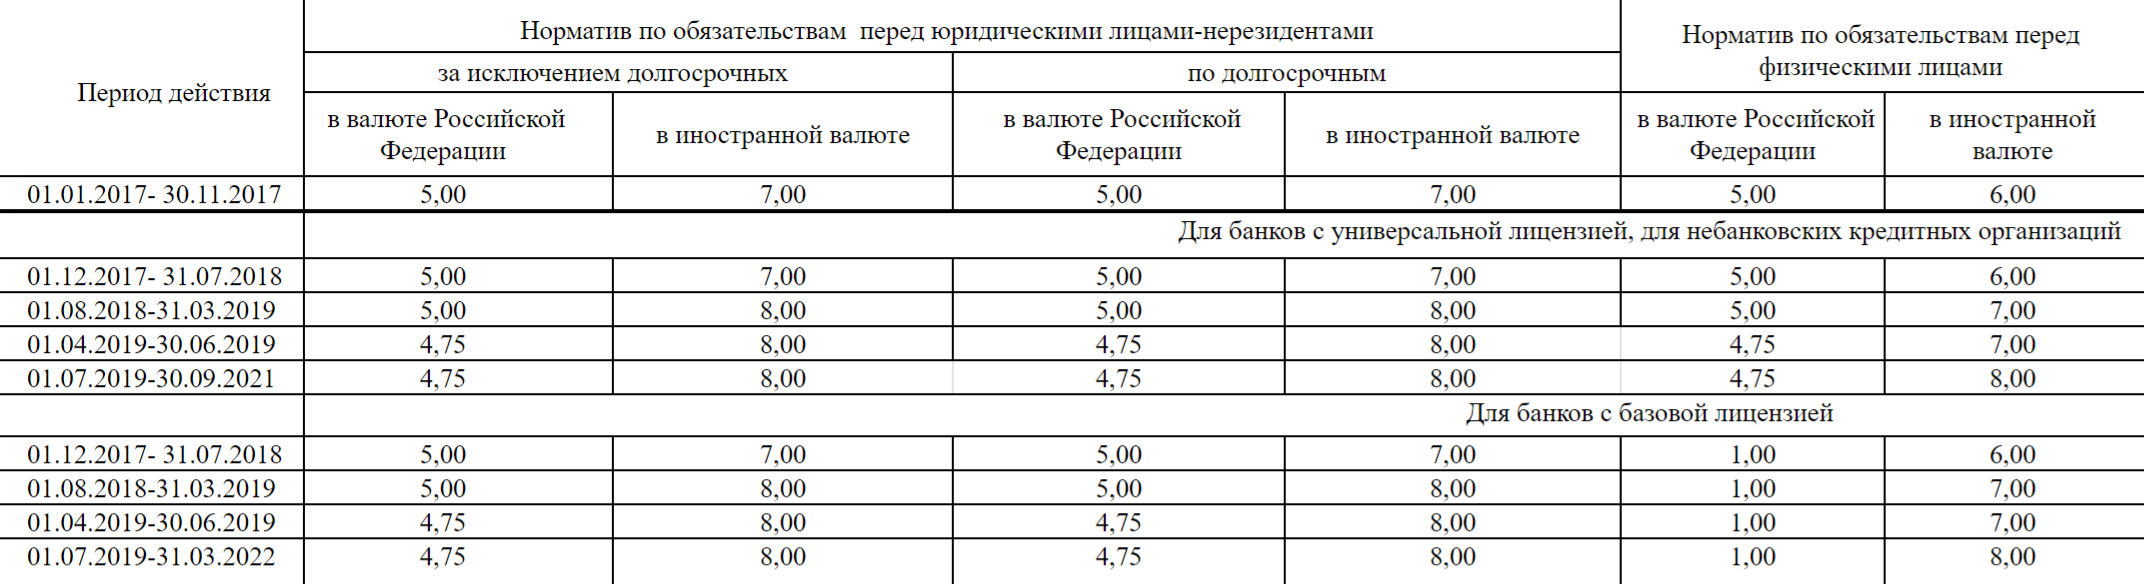 Нормативы обязательных резервов в процентах в зависимости от вида вклада. Источник: cbr.ru